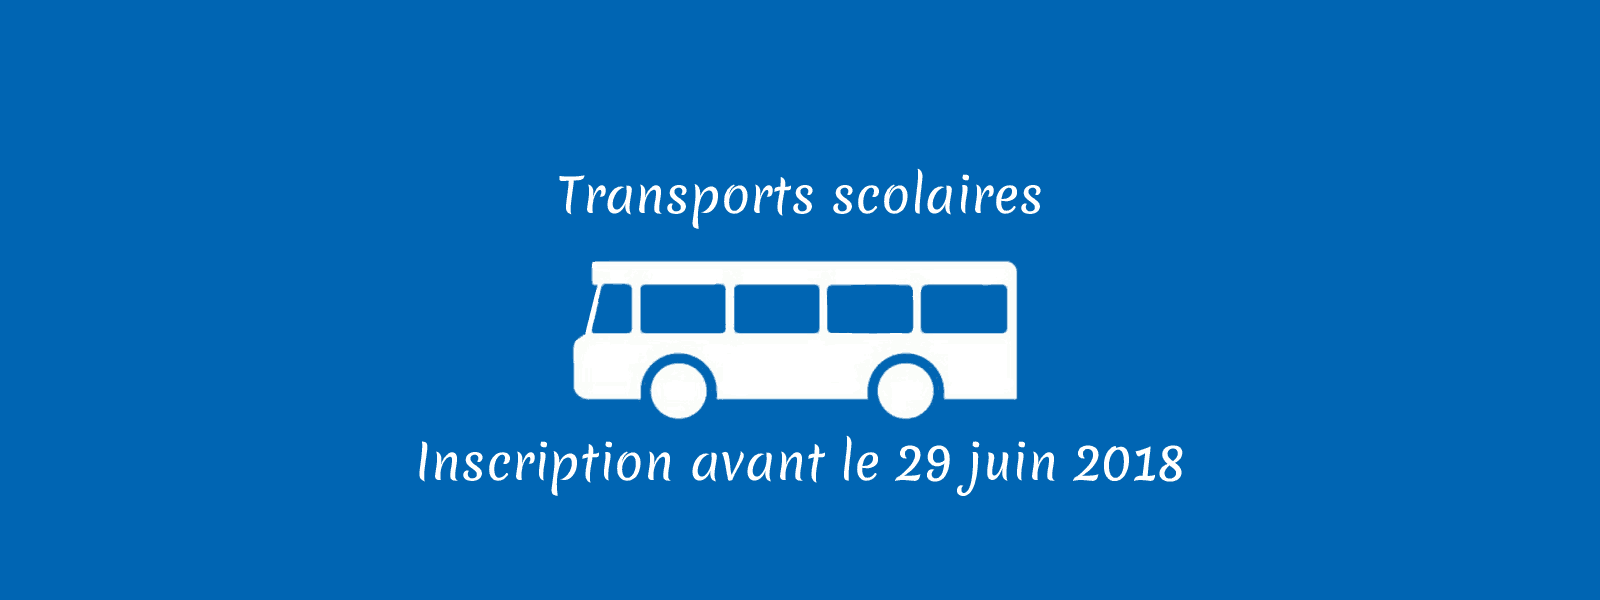 Inscription aux transports scolaires avant le 29 juin 2018